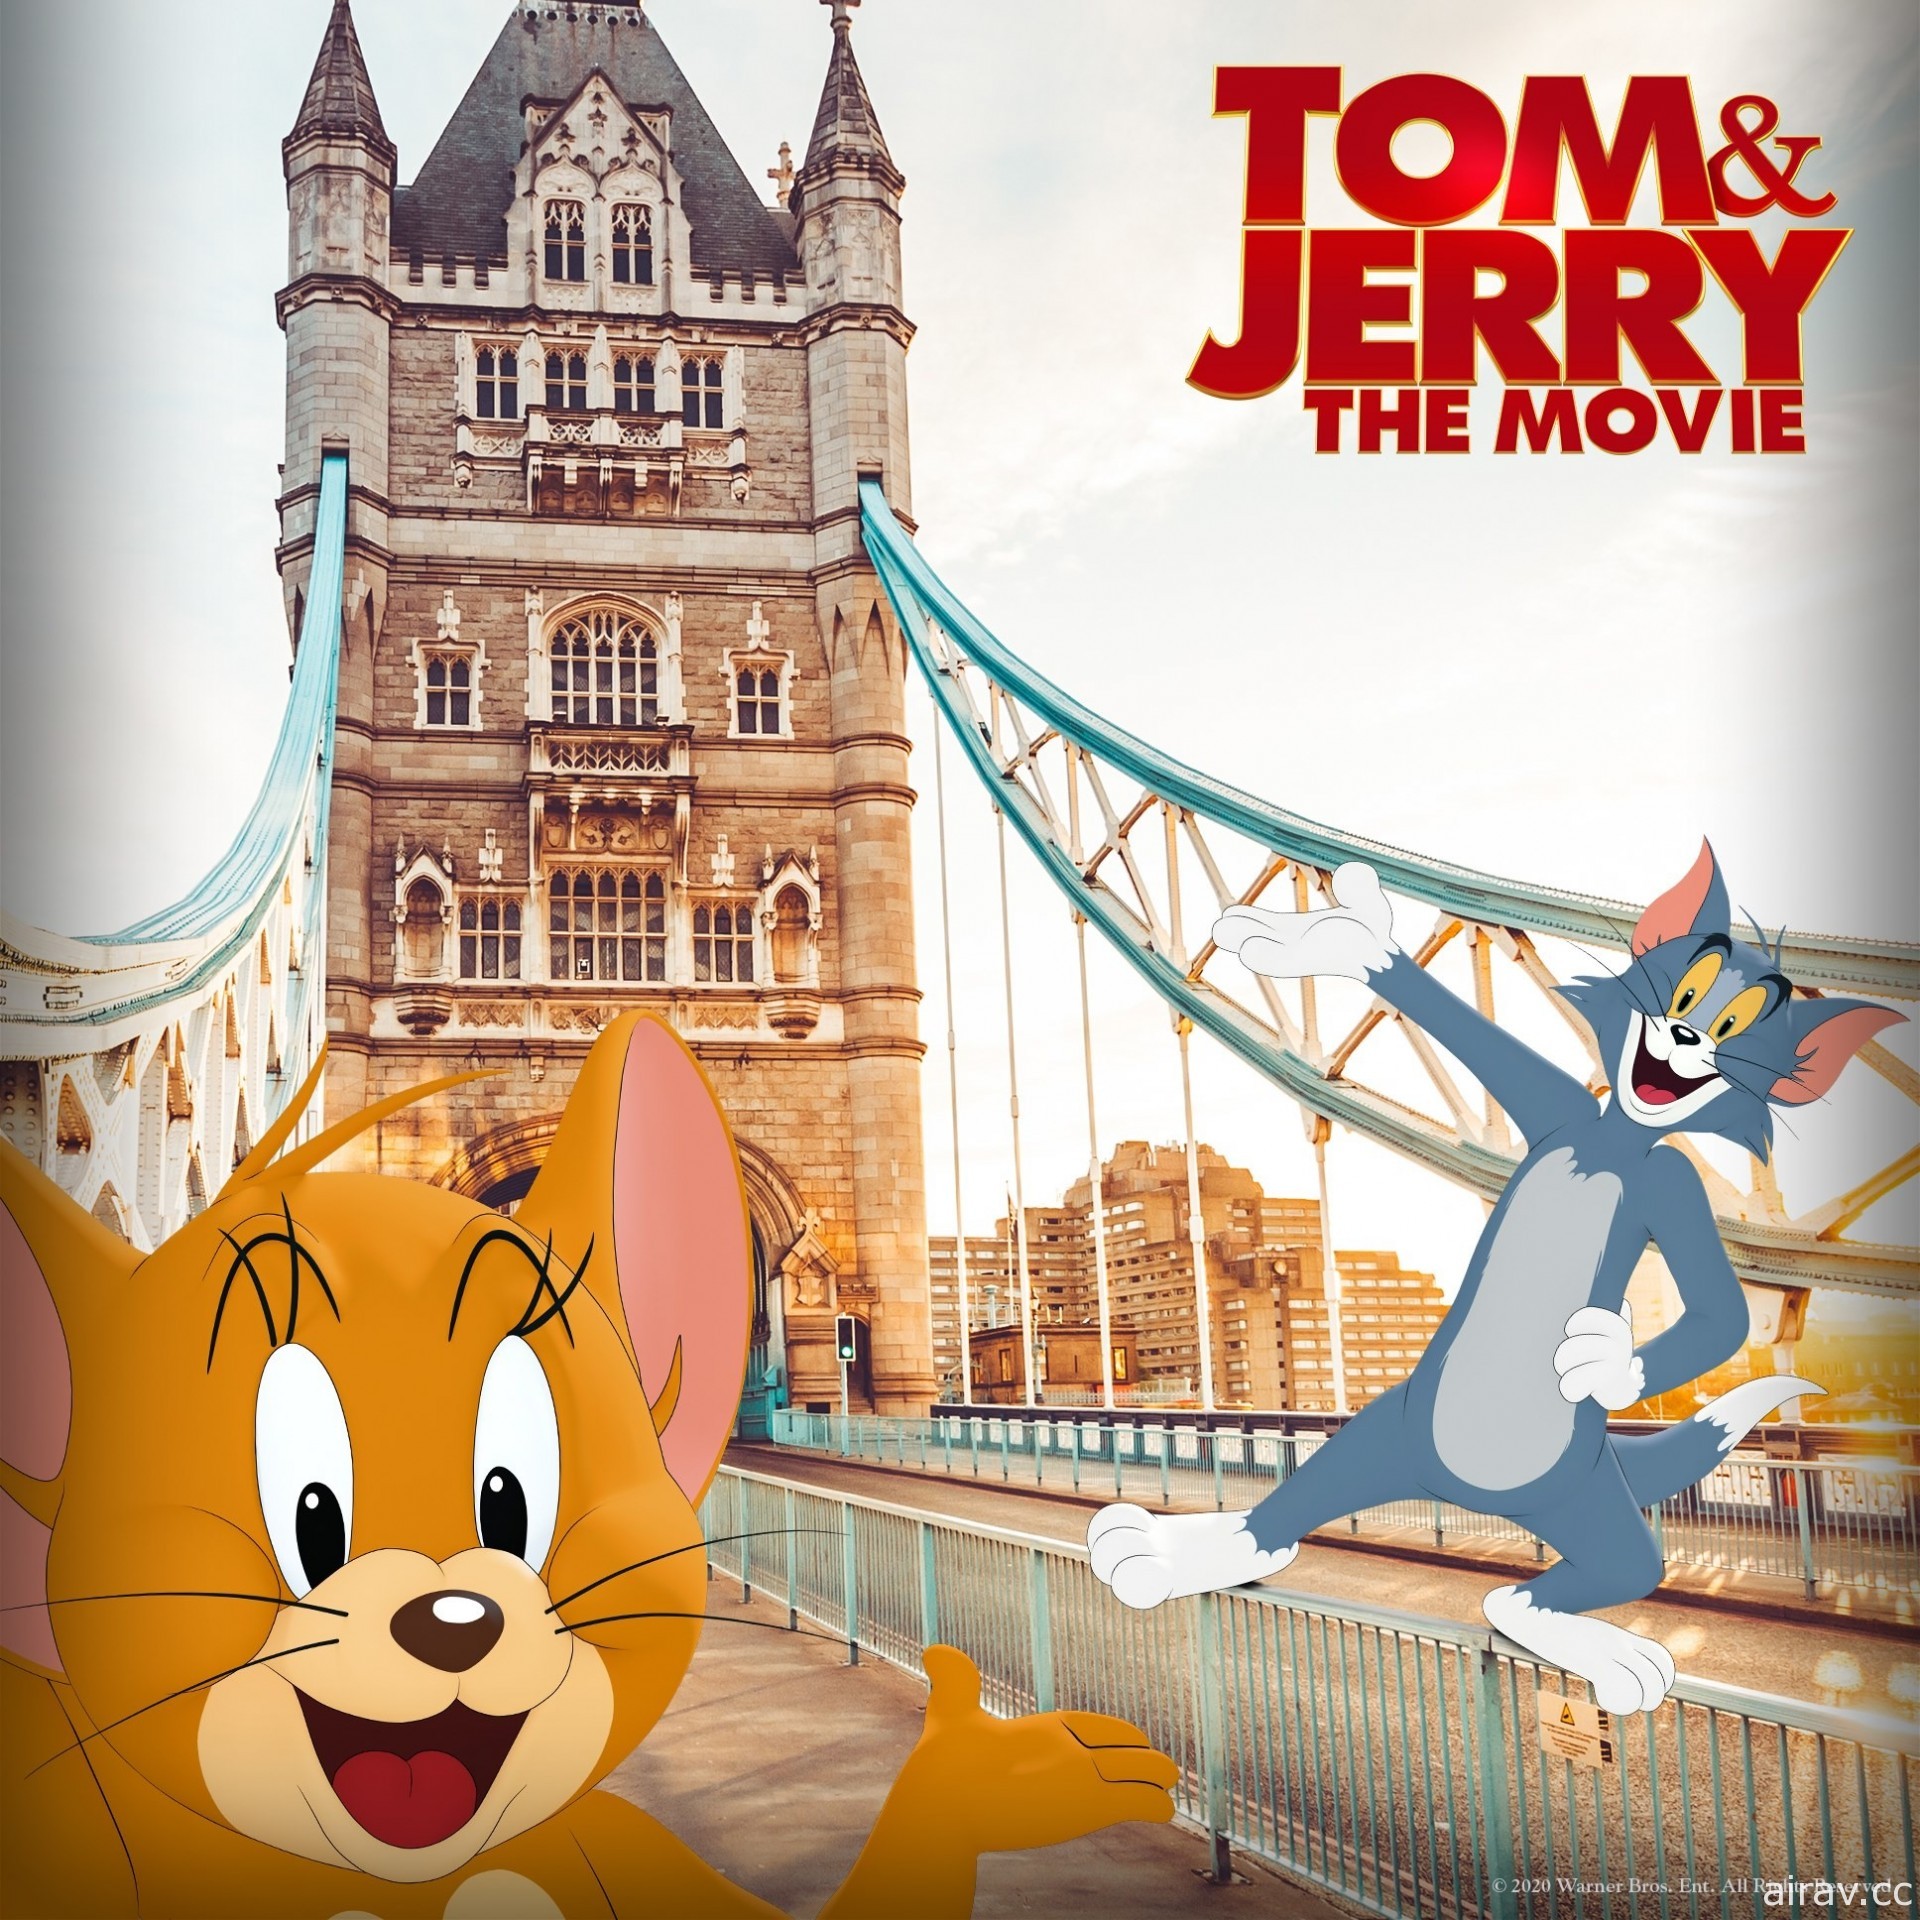 克萝伊摩蕾兹参演《汤姆猫与杰利鼠》电影预告宣传影片释出 2021 年上映